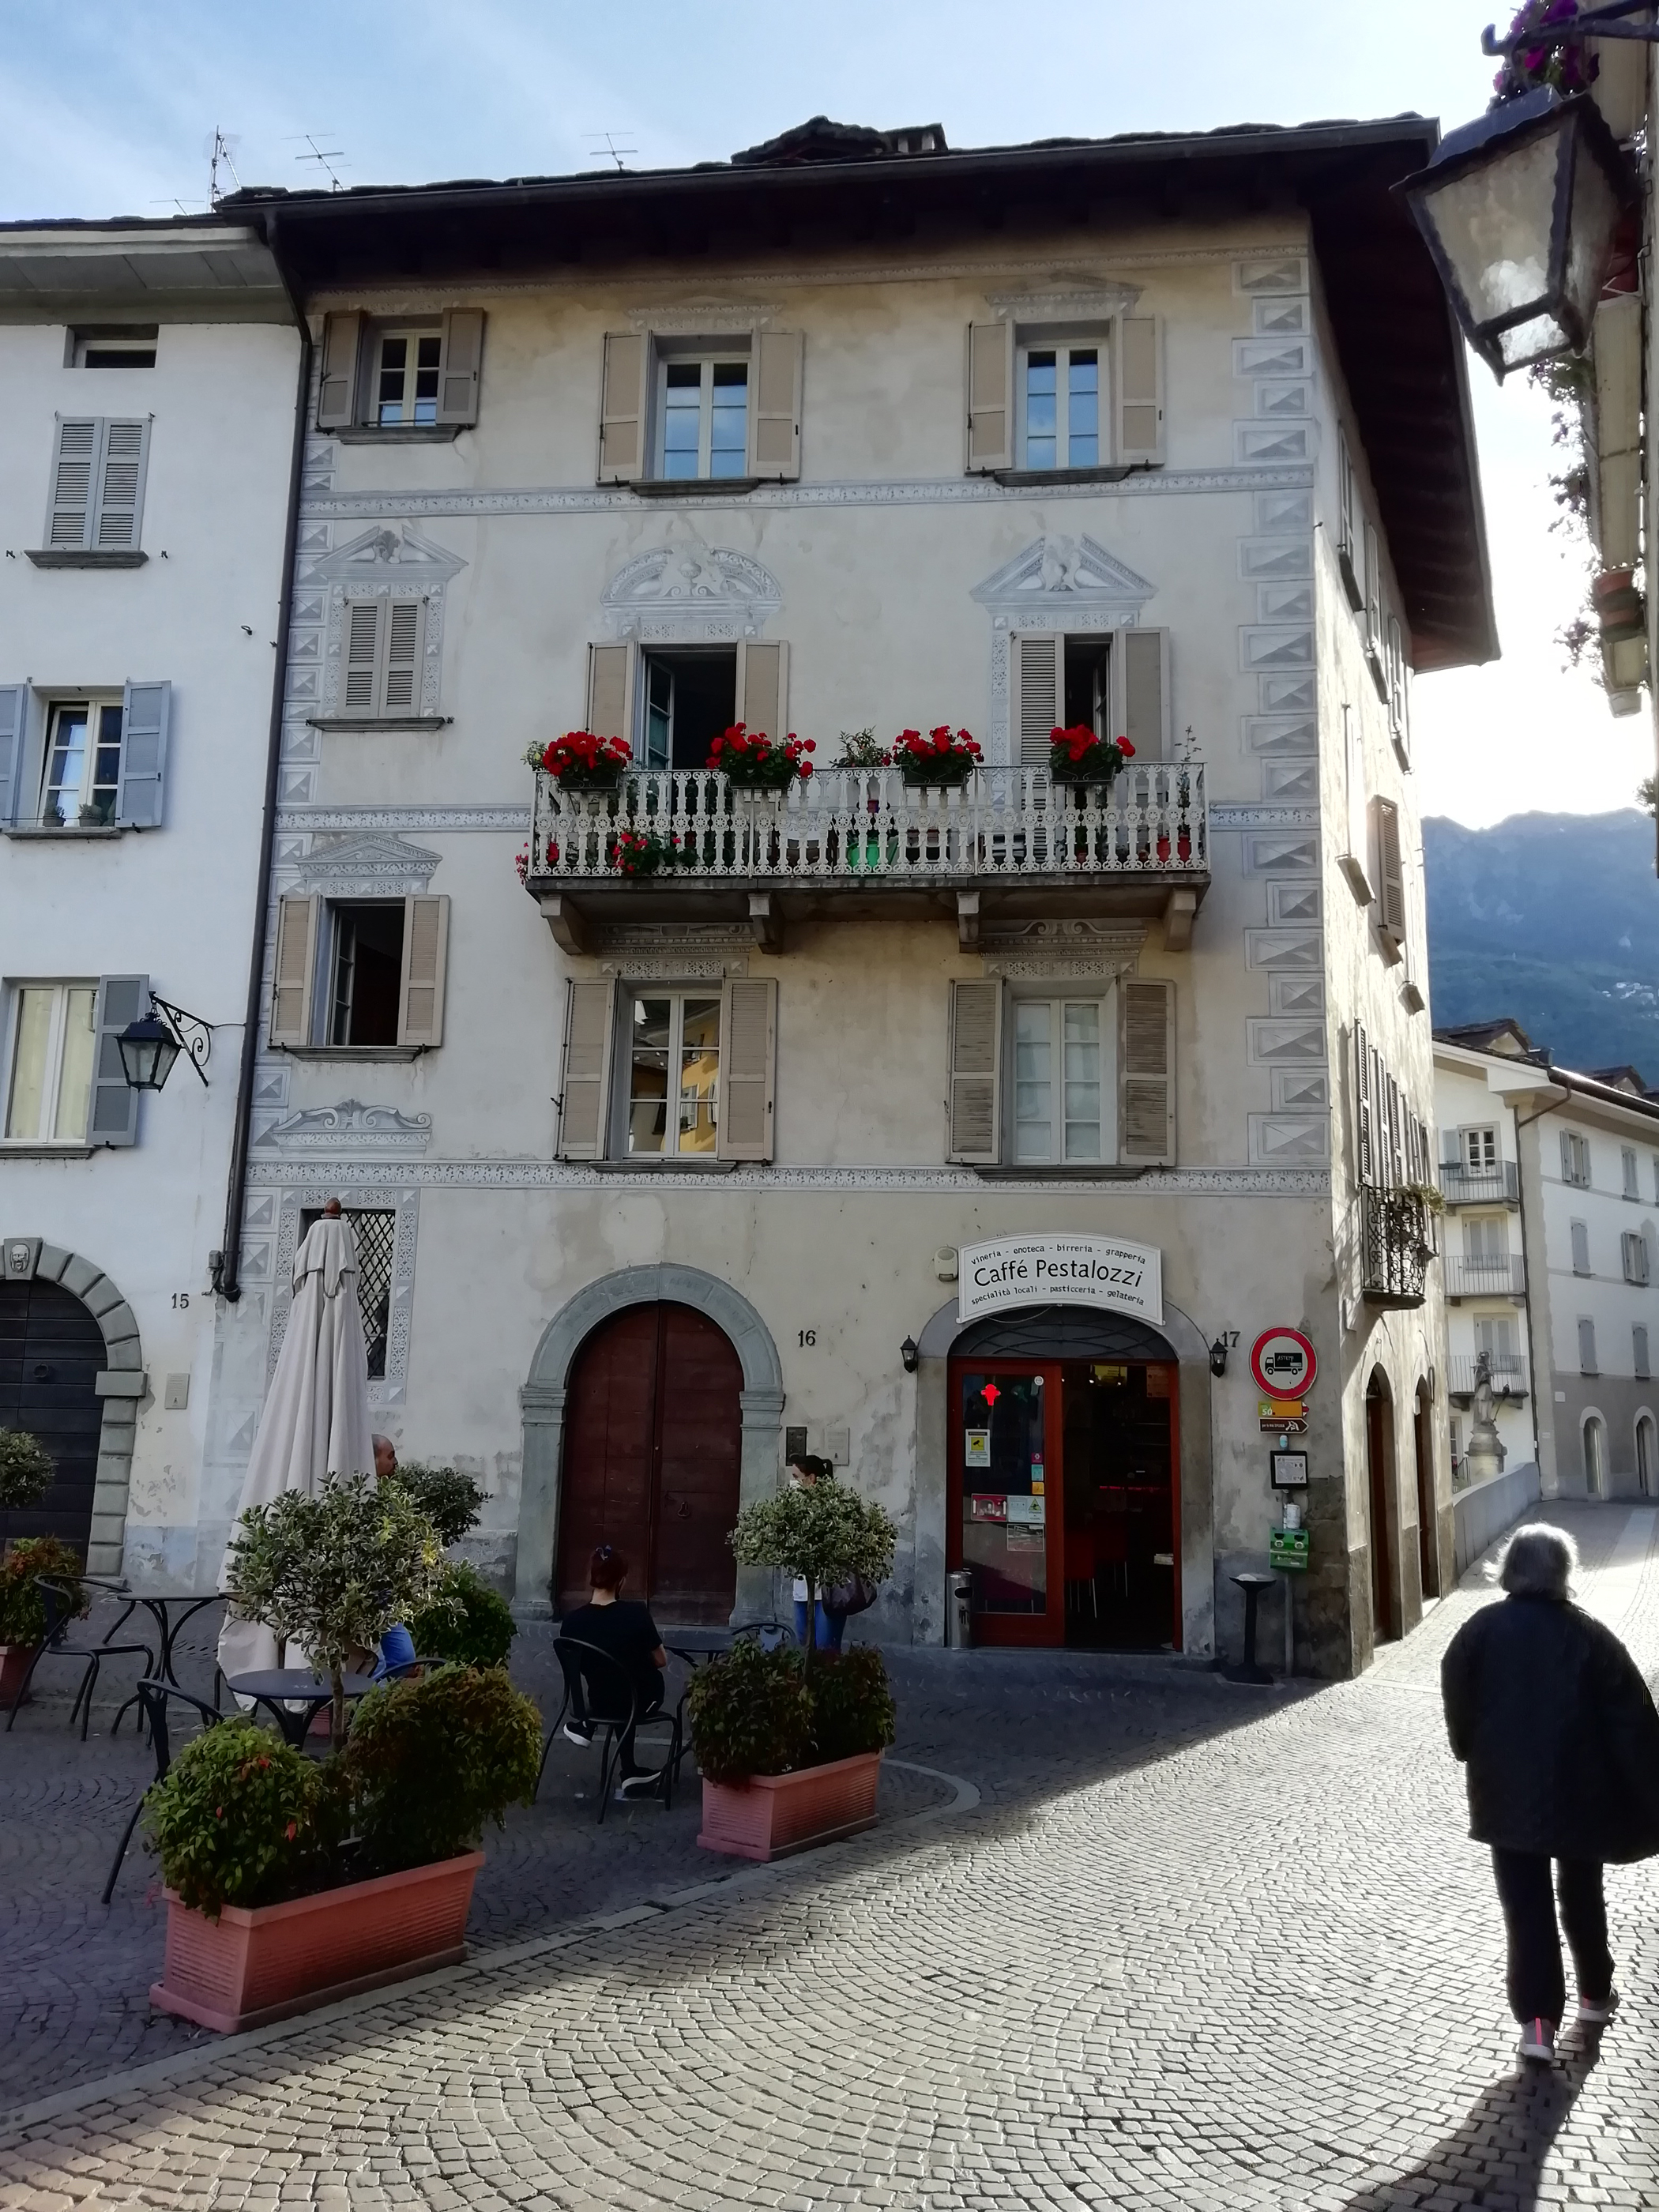 Edificio in piazza Pestalozzi, 16 (casa) - Chiavenna (SO) 